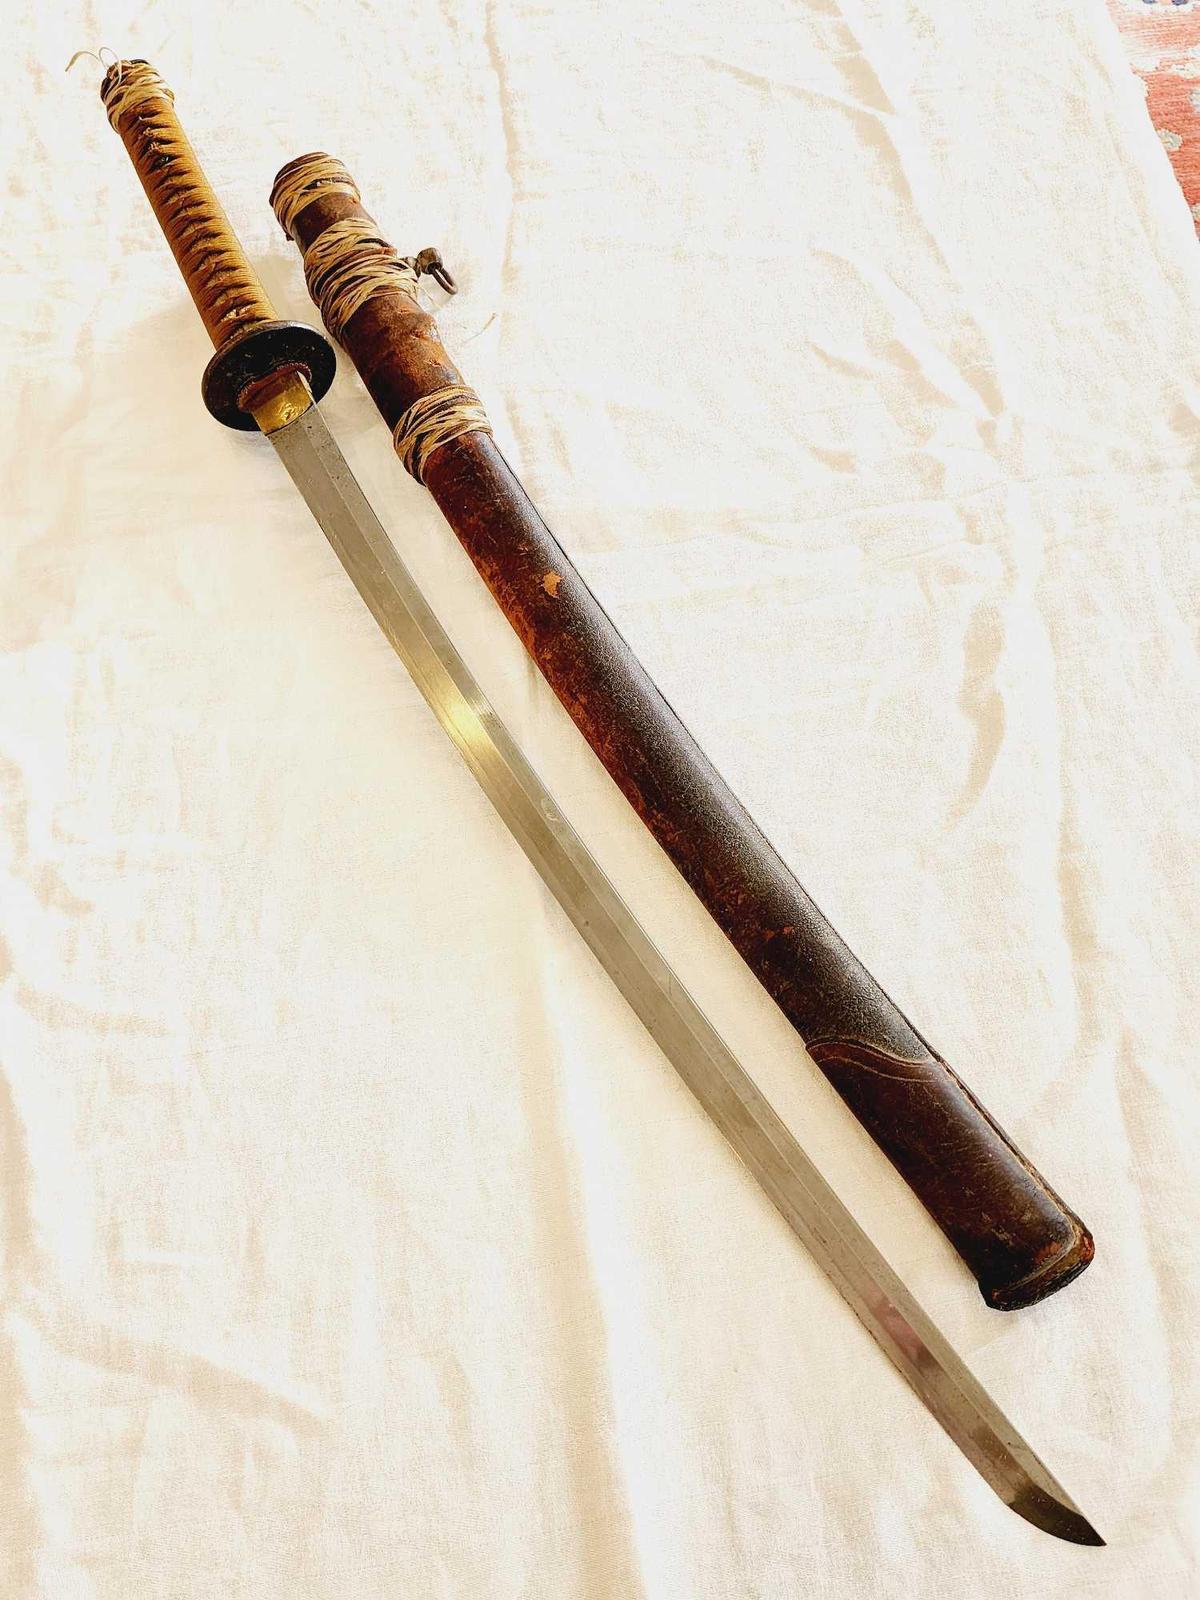 Antique Japanese Samurai sword w/ Tsuba & scabbard